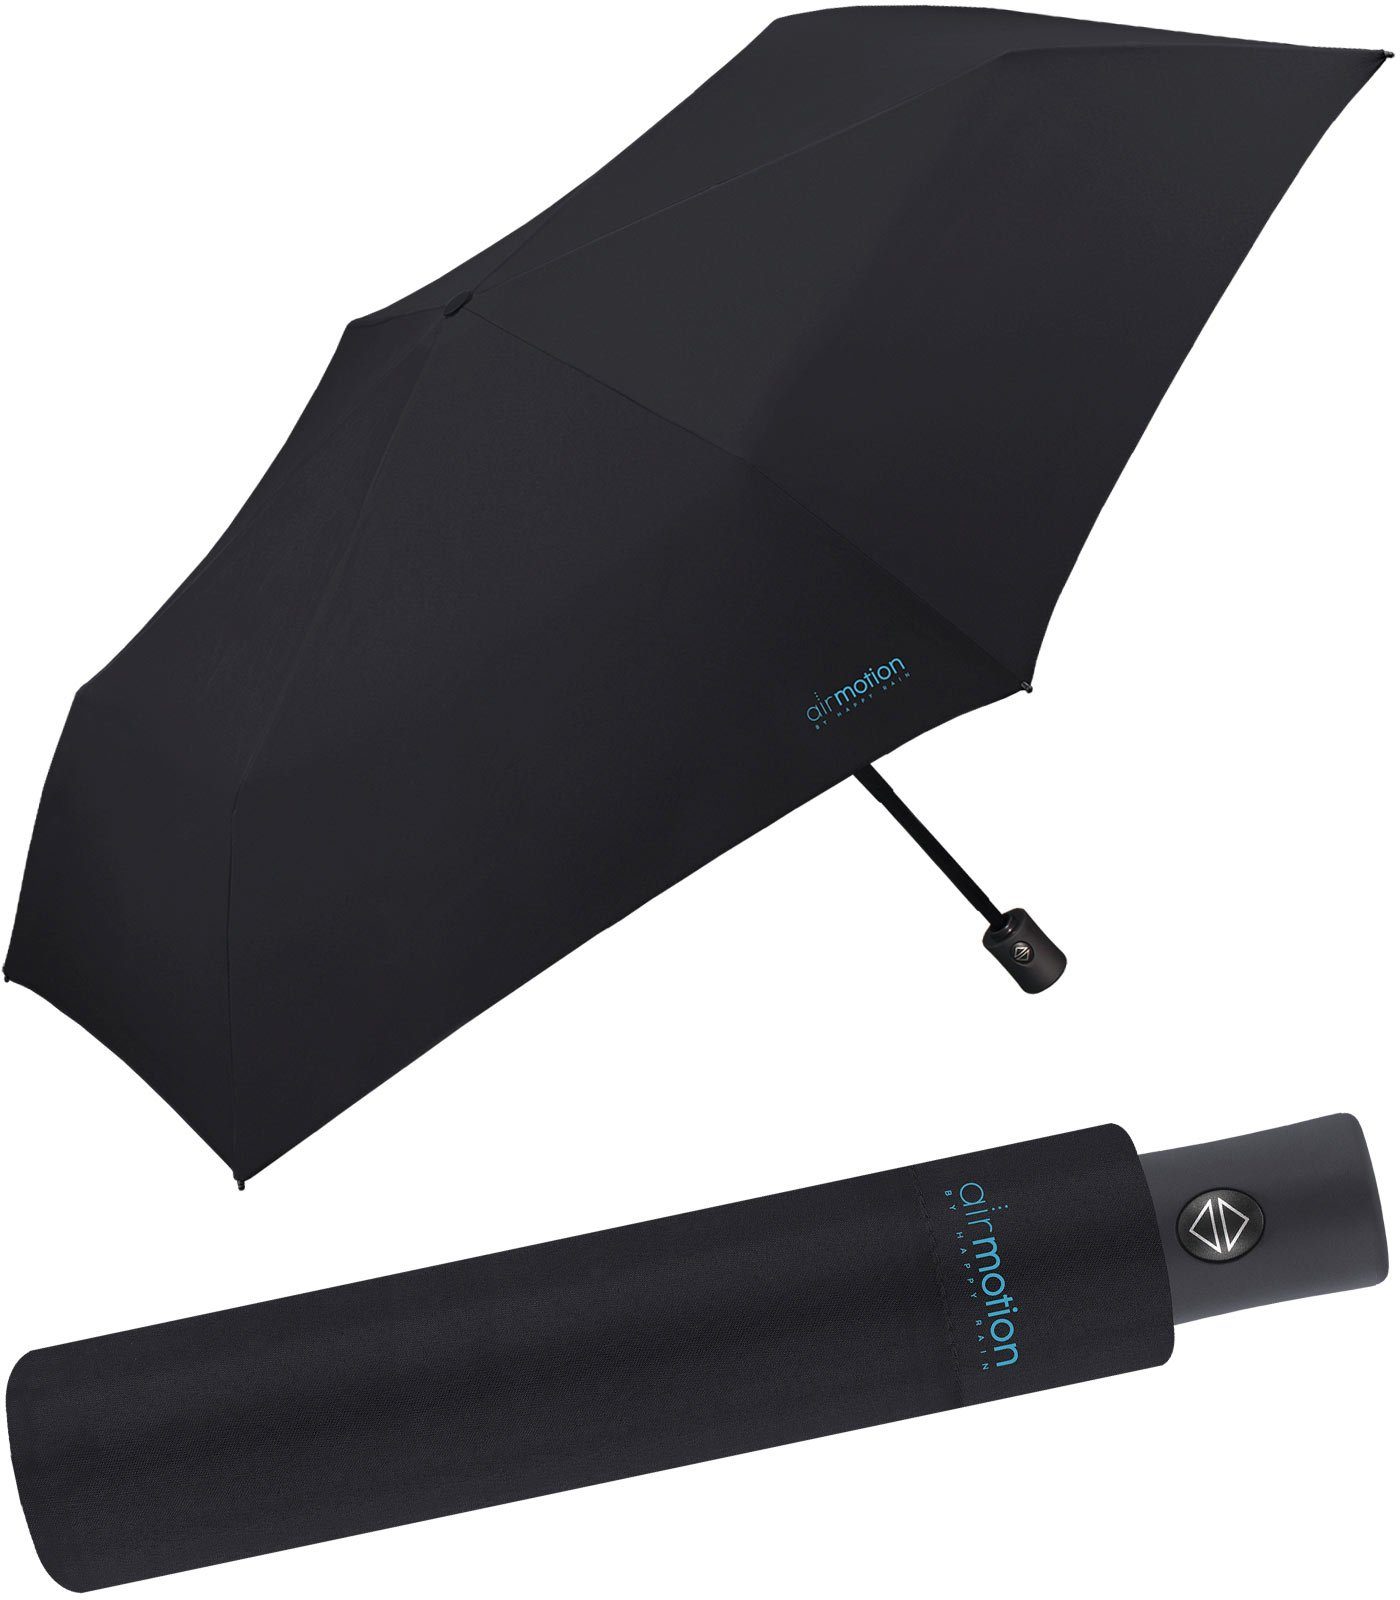 RAIN Auf-Zu-Automatik Gepäck HAPPY superleicht, Minischirm perfekt leichtester schwarz - 174 g Motion Handtasche für Air und Taschenregenschirm - vollautomatischer